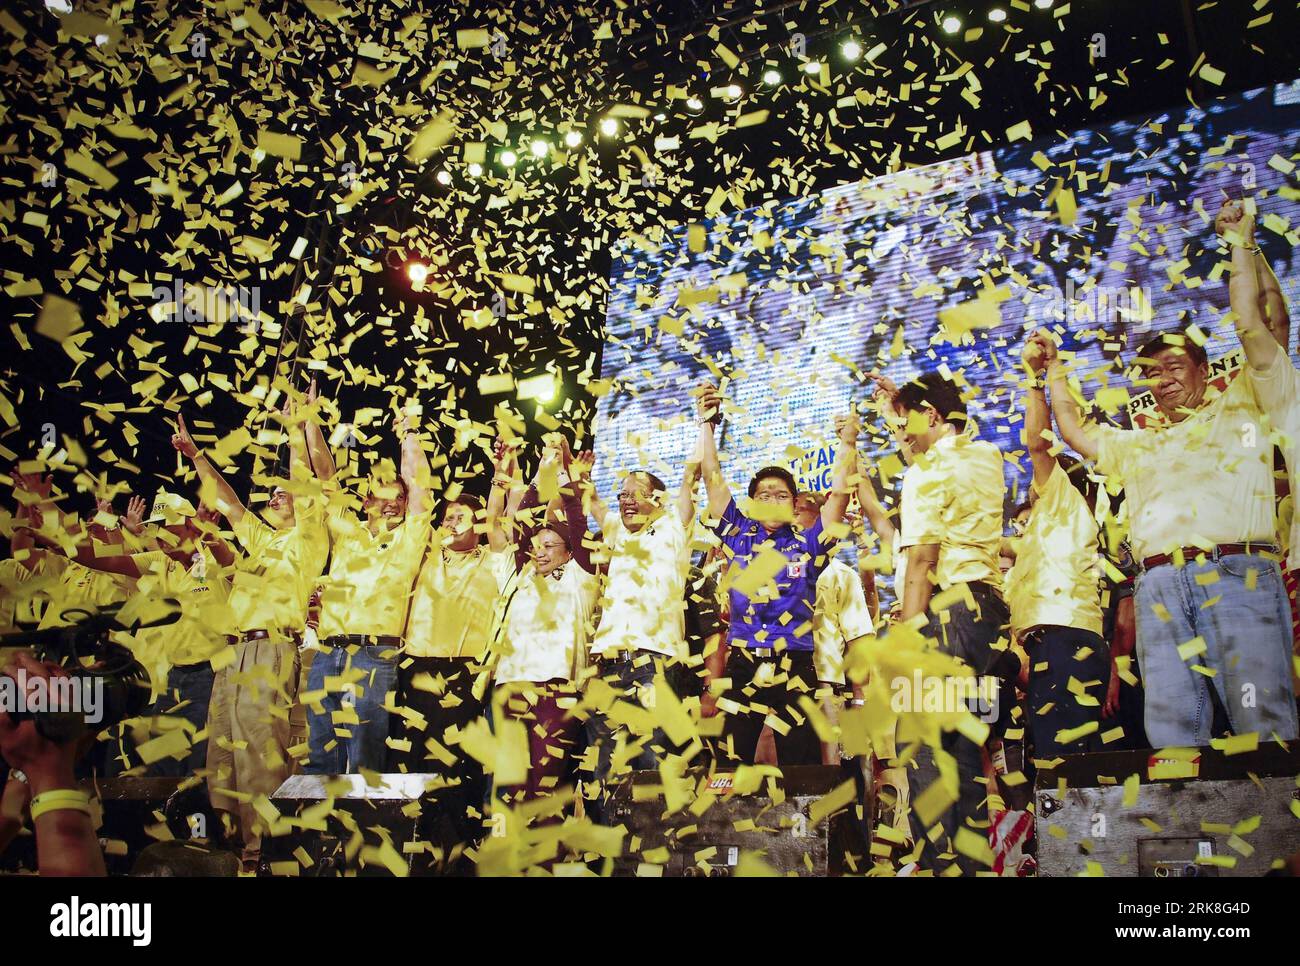 Bildnummer : 54033539 Datum : 07.05.2010 Copyright : imago/Xinhua (100508) -- MANILLE, 8 mai 2010 (Xinhua) -- Benigno Aquino III (C) et ses partisans assistent à son dernier rassemblement de campagne à Quezon City, Philippines, le 7 mai 2010. Les élections présidentielles et locales de 2010 auront lieu le 10 mai dans toutes les Philippines. (Xinhua/Dondi Tawatao) (cl) PHILIPPINES-ELECTIONS-PRÉPARATIFS PUBLICATIONxNOTxINxCHN Politik People Wahl Philippinen Vorbereitung Premiumd xint kbdig xub 2010 quer Highlight o00 Wahlkampf Bildnummer 54033539 Date 07 05 2010 Copyright Imago XI Banque D'Images